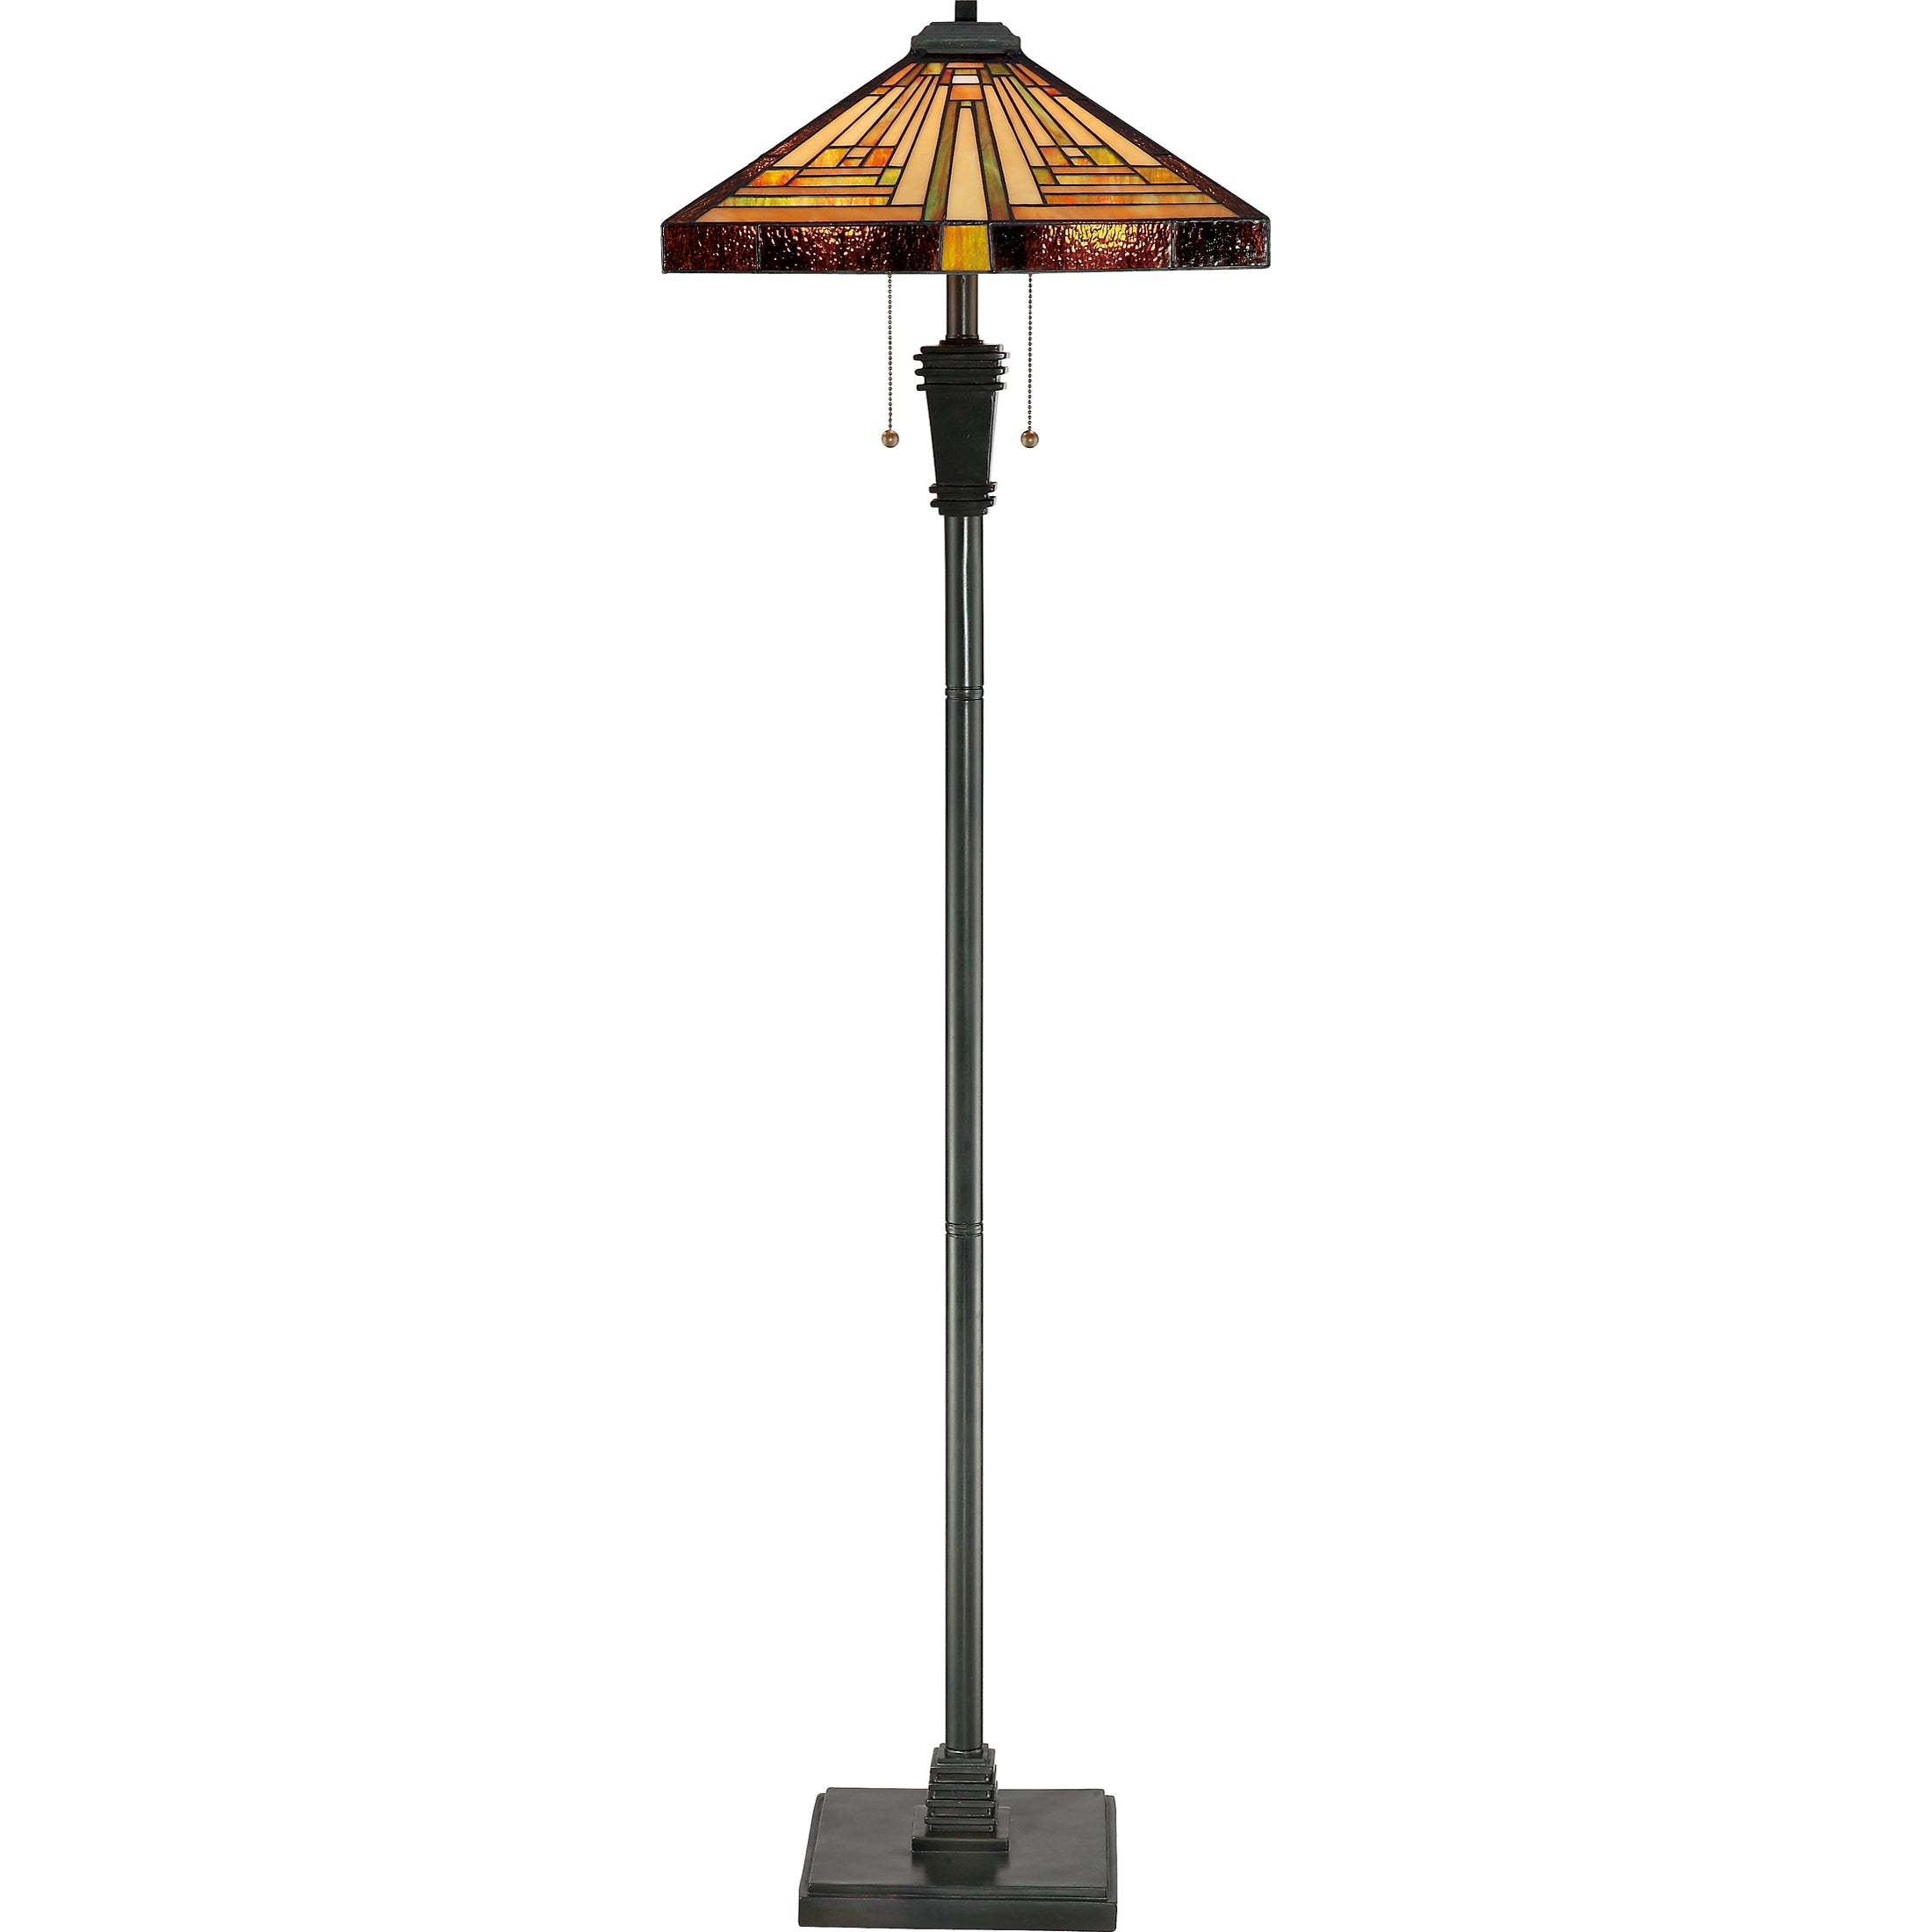 Stephen Floor Lamp Vintage Bronze